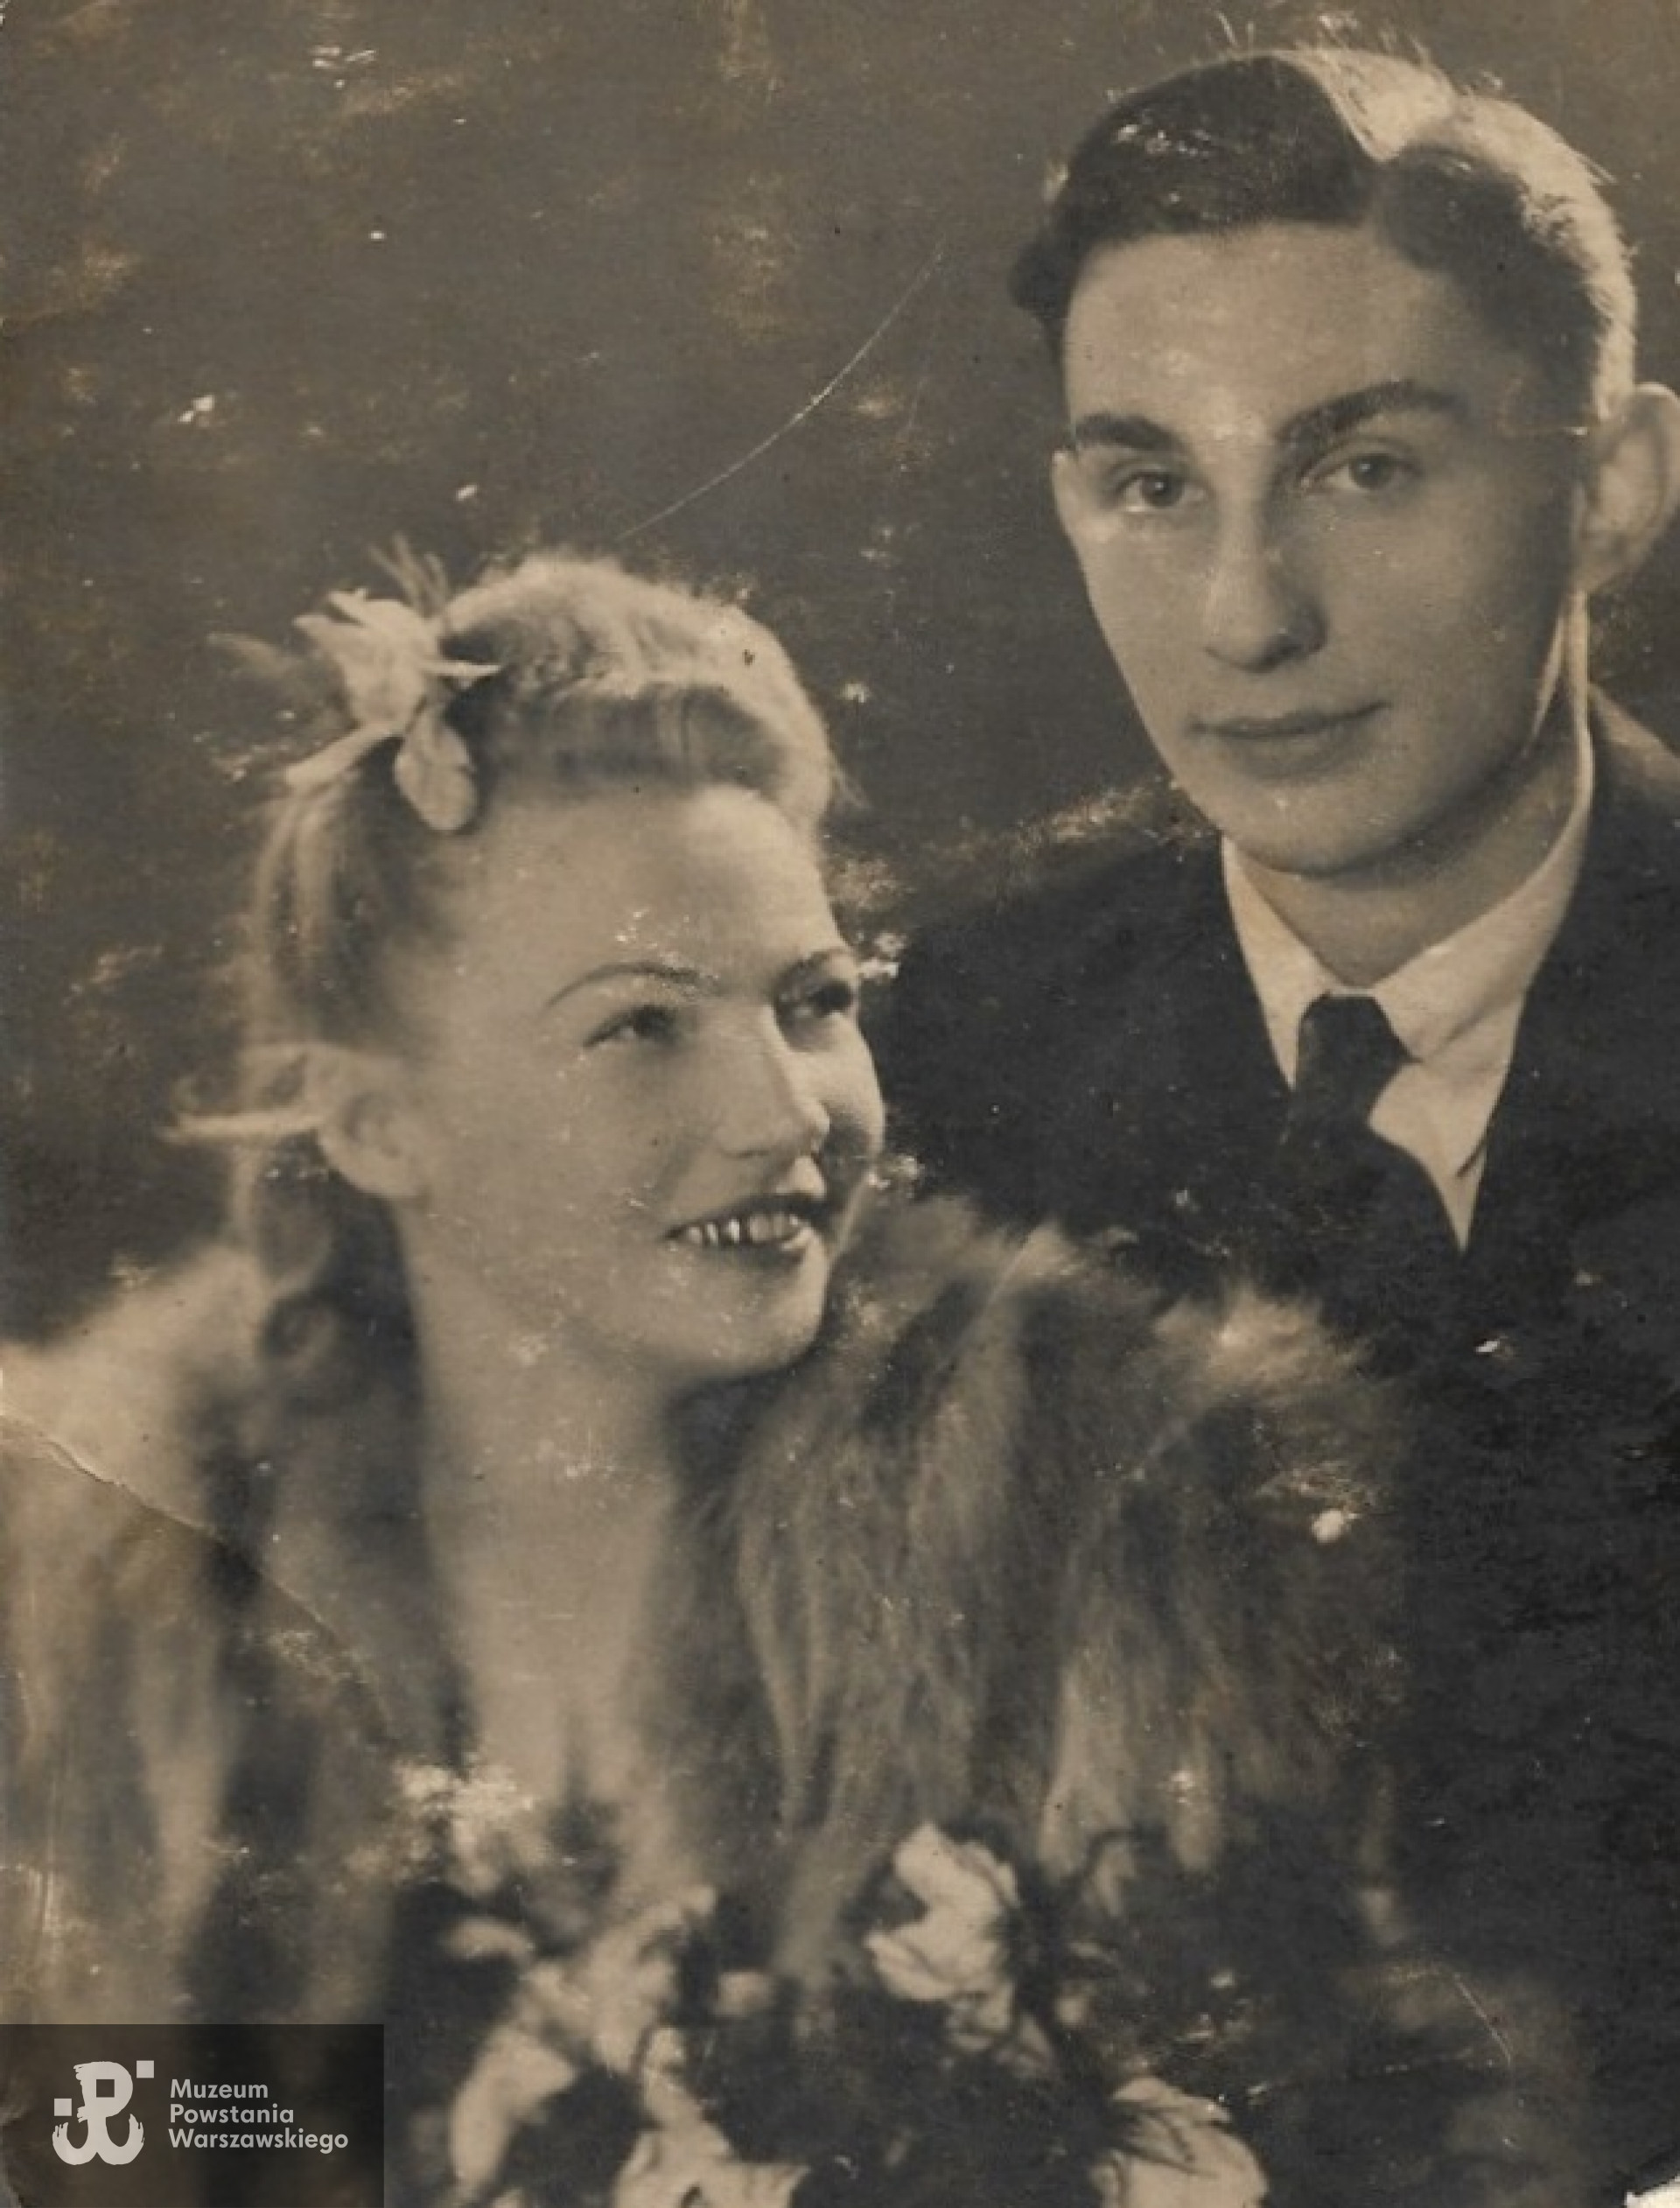 Barbara i Ryszard Płacheccy, fotografię udostępniła p. Katarzyna Grabowska-Bilicka